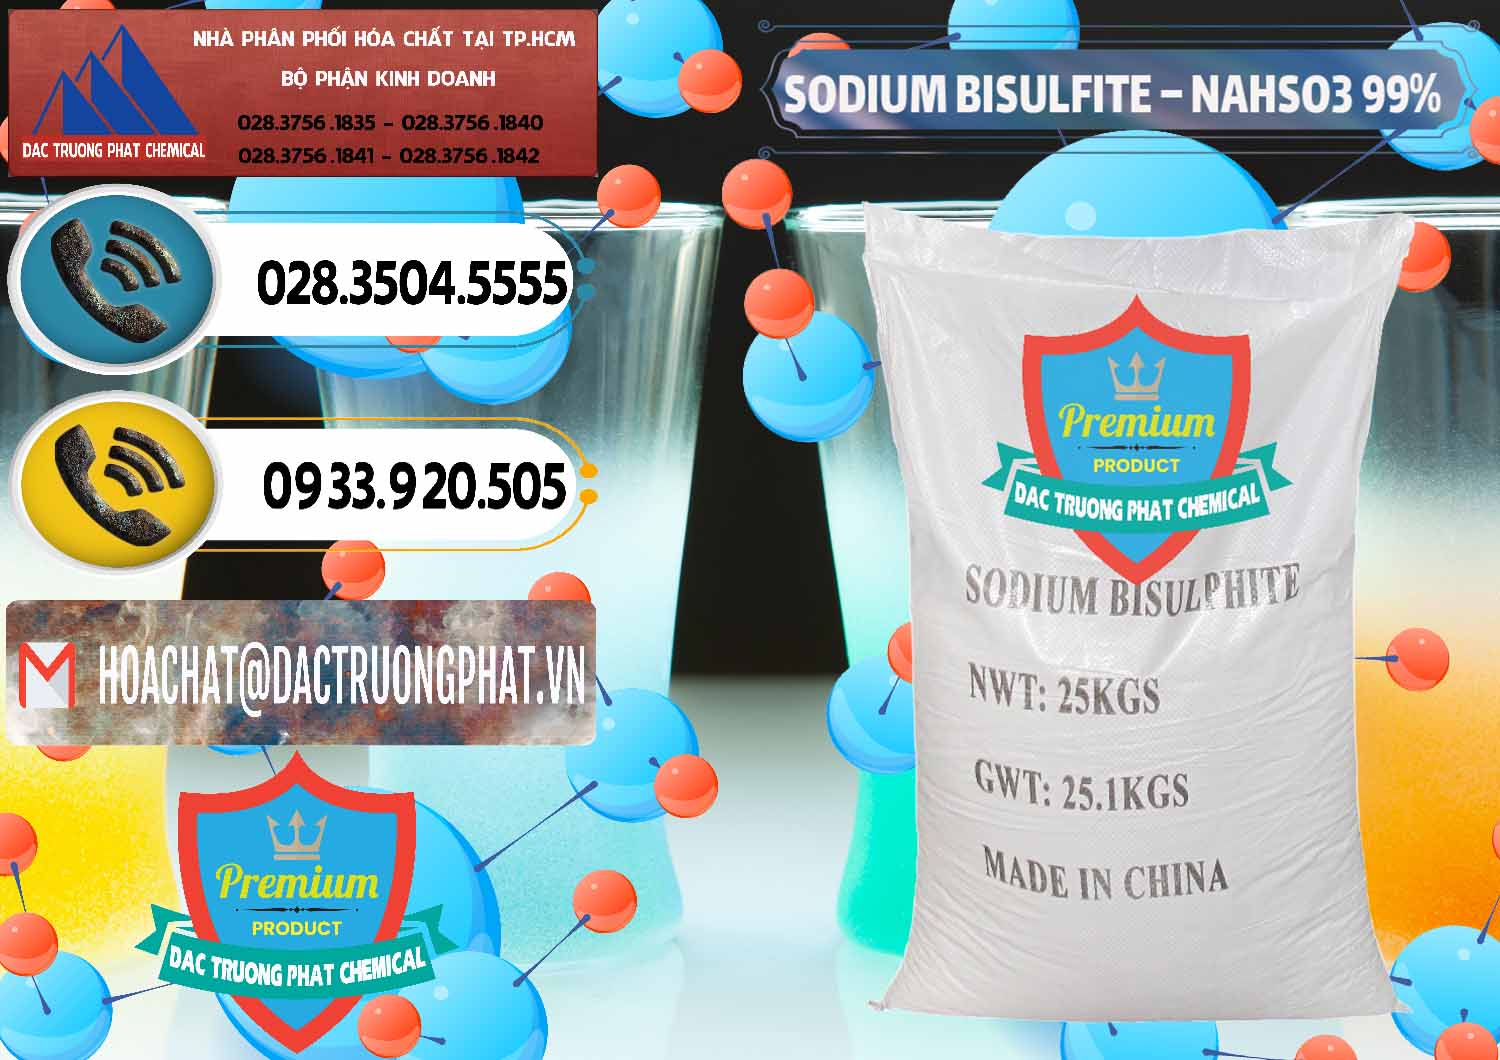 Đơn vị nhập khẩu - bán Sodium Bisulfite – NAHSO3 Trung Quốc China - 0140 - Chuyên cung cấp và nhập khẩu hóa chất tại TP.HCM - hoachatdetnhuom.vn